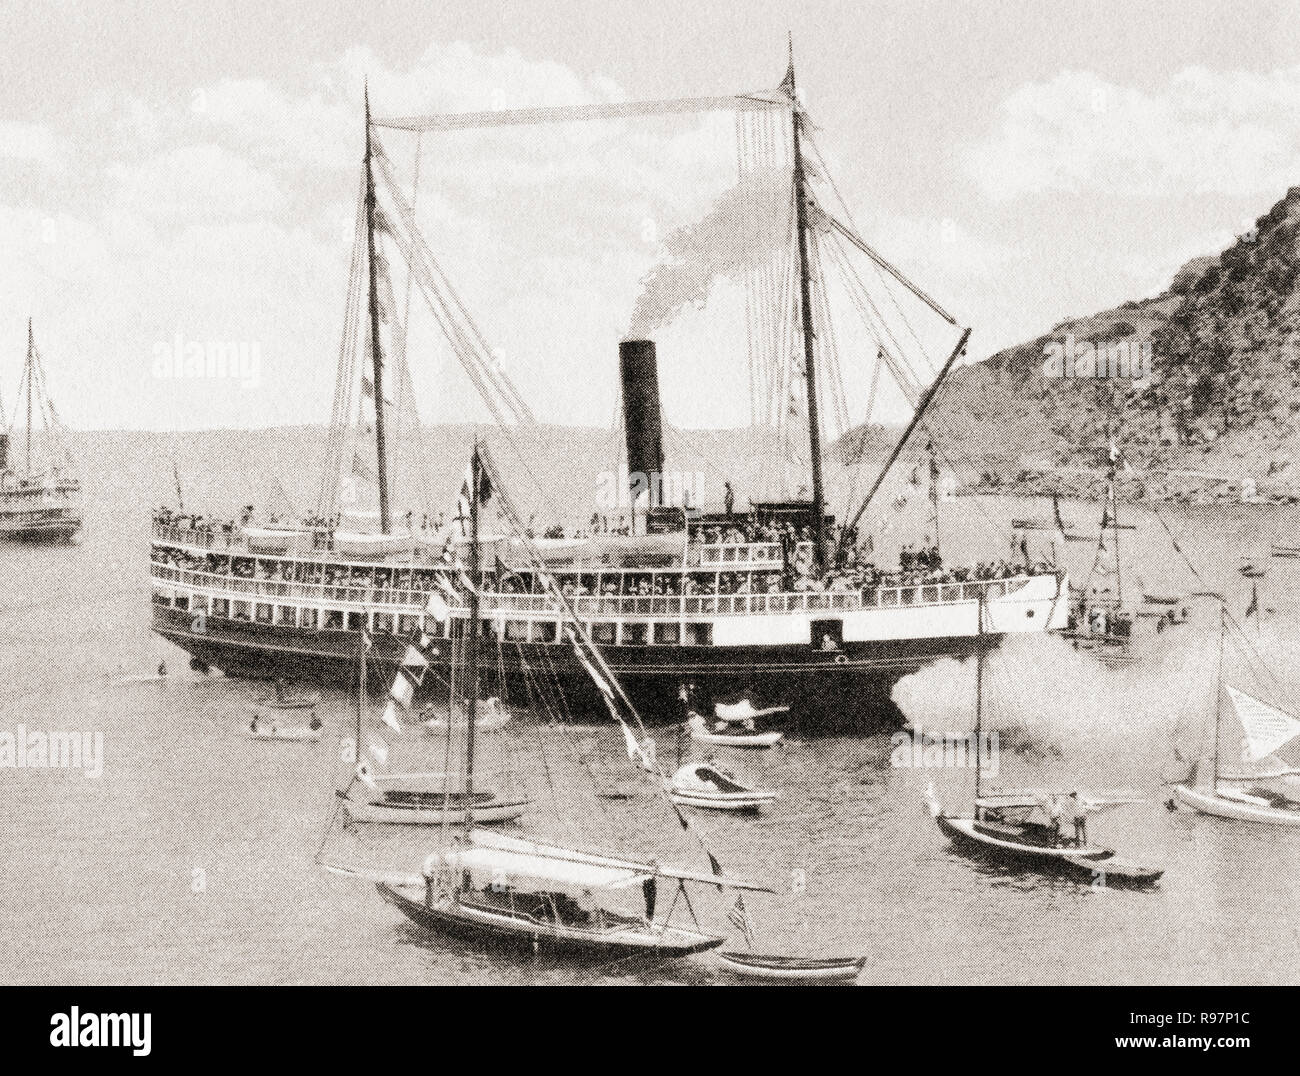 La SS, Cabrillo en bois d'un navire à vapeur servant au transport des touristes entre le Port de Los Angeles et d'Avalon et de deux ports de Santa Catalina Island, Californie, États-Unis d'Amérique, vu ici à l'atterrissage à Avalon c. 1915. Merveilleux de Californie, publié en 1915. Banque D'Images